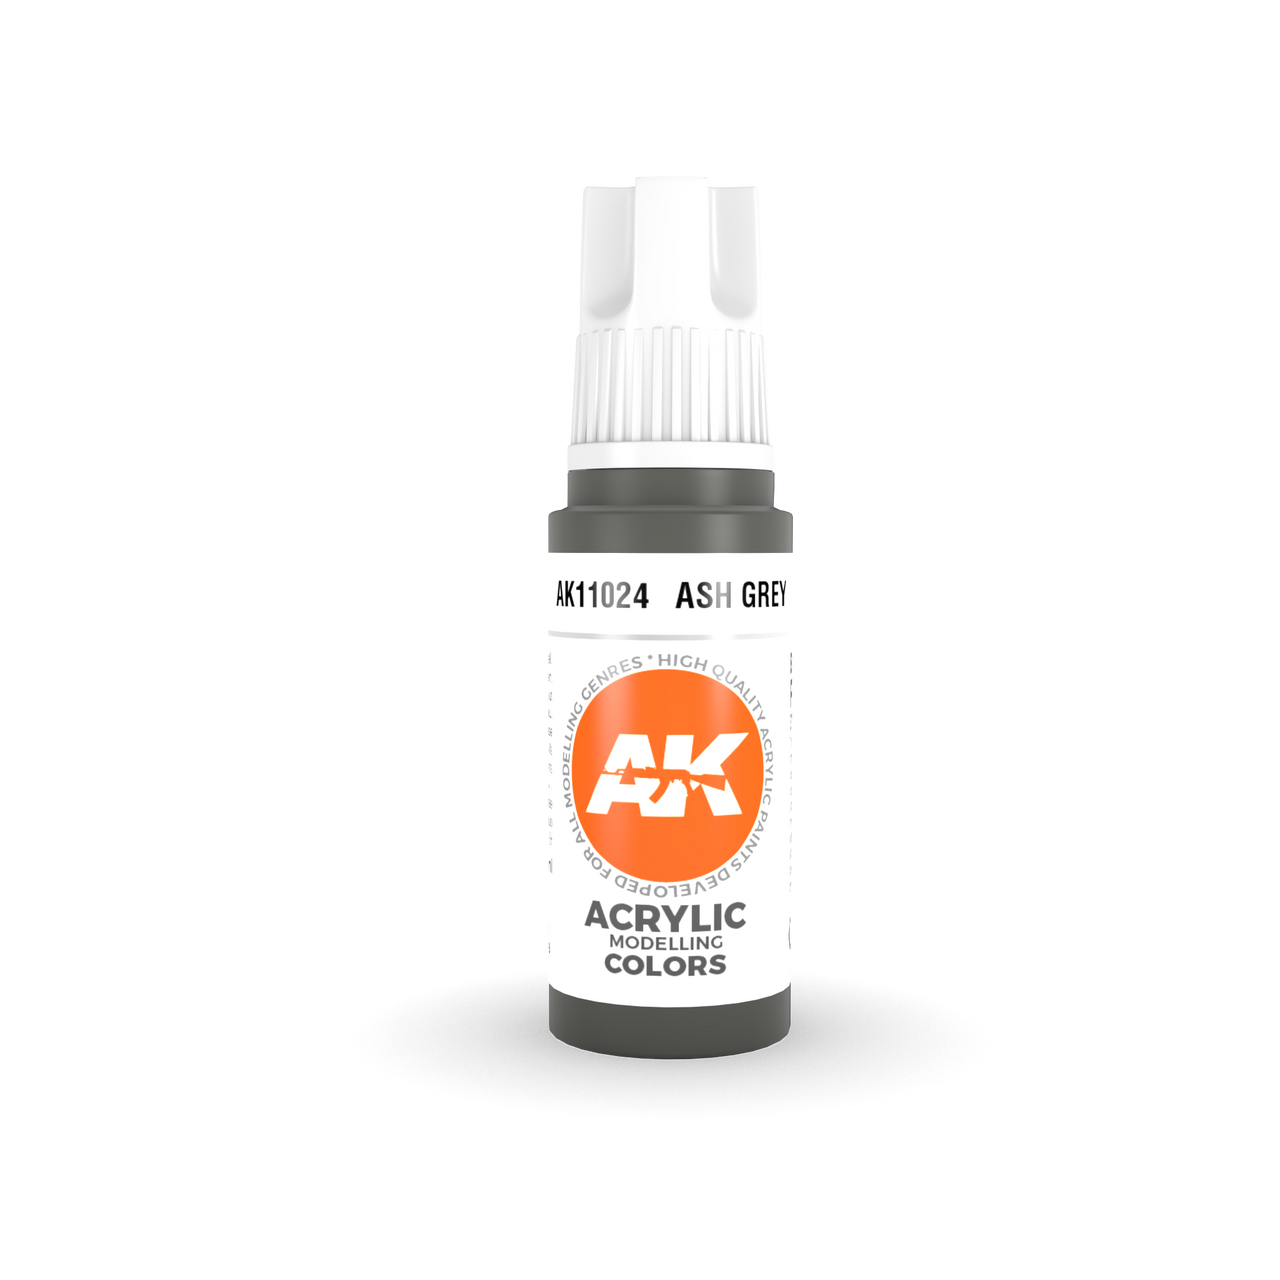 Ash Grey - AK 3Gen Acrylic